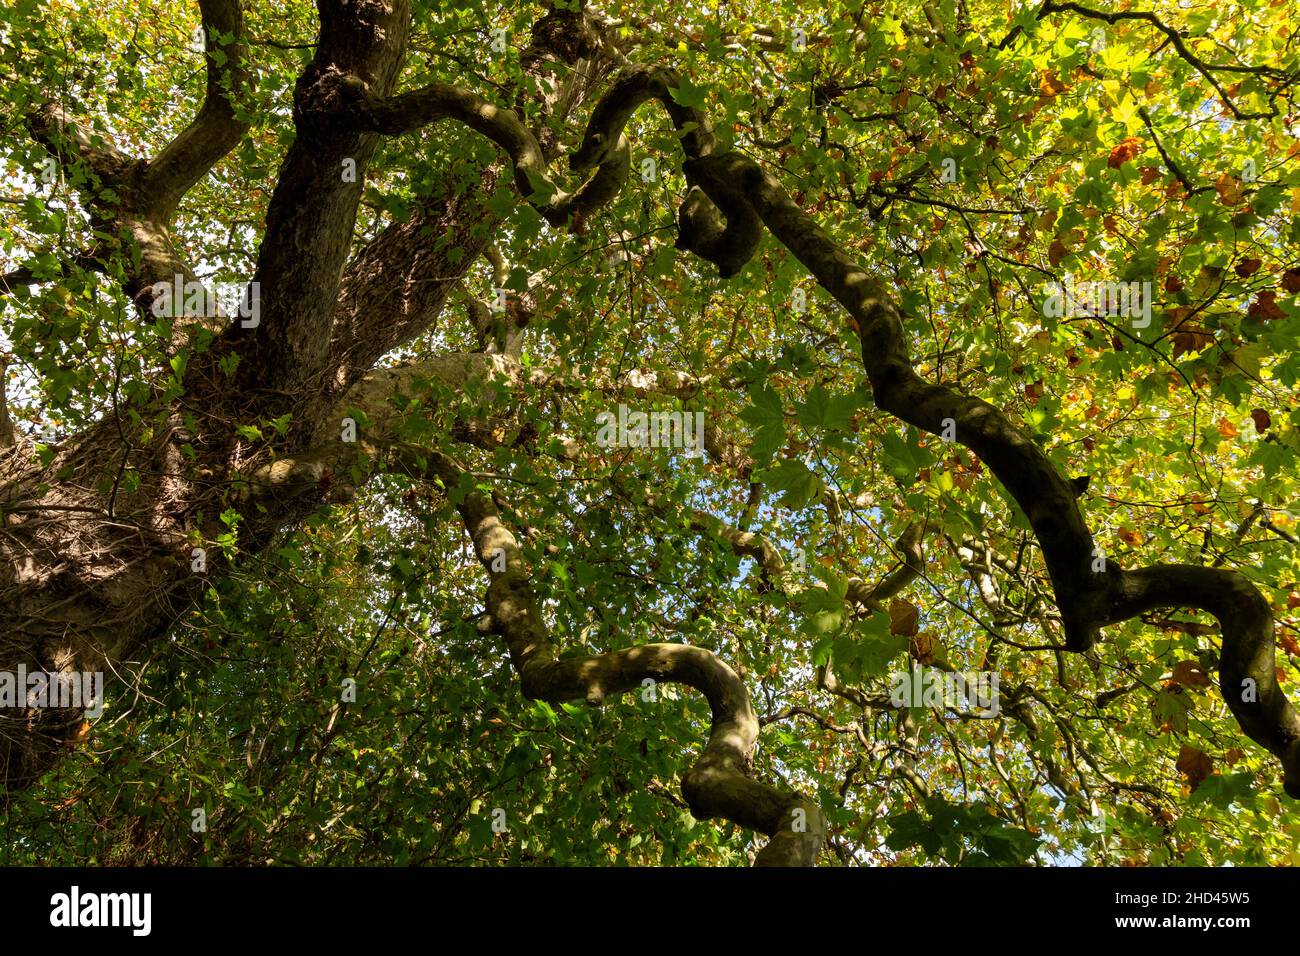 Un árbol plano con su corteza distintiva. Una foto mirando hacia arriba en su dosel de hojas con el sol del otoño brillando a través de las hojas Foto de stock